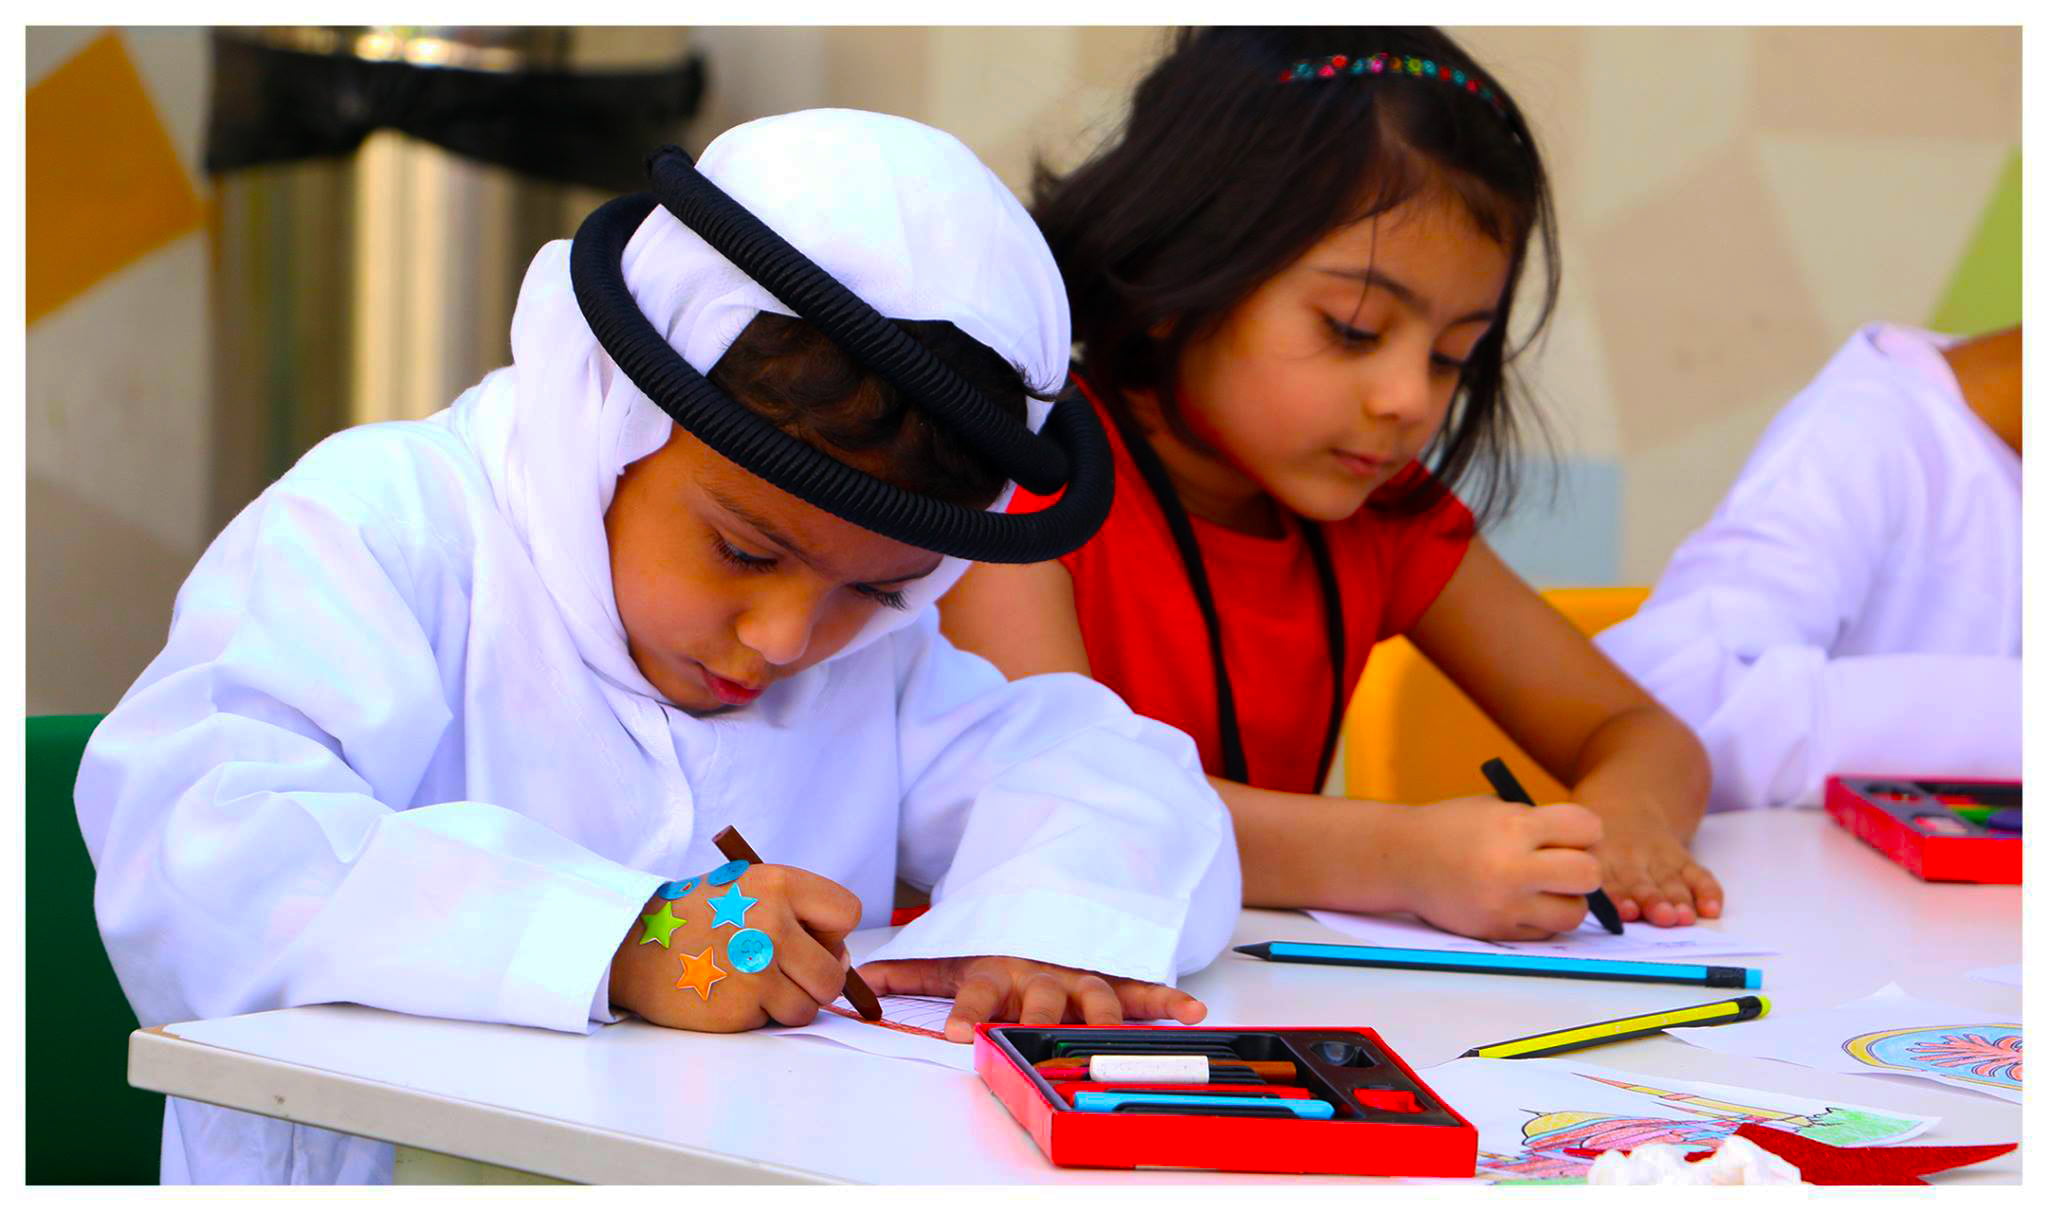 Foto von Kindern im Ambassador Kindergarten und Kindergarten in Dubai, die sich mit kunstbasiertem Lernen beschäftigen, um Kreativität und Feinmotorik zu entwickeln